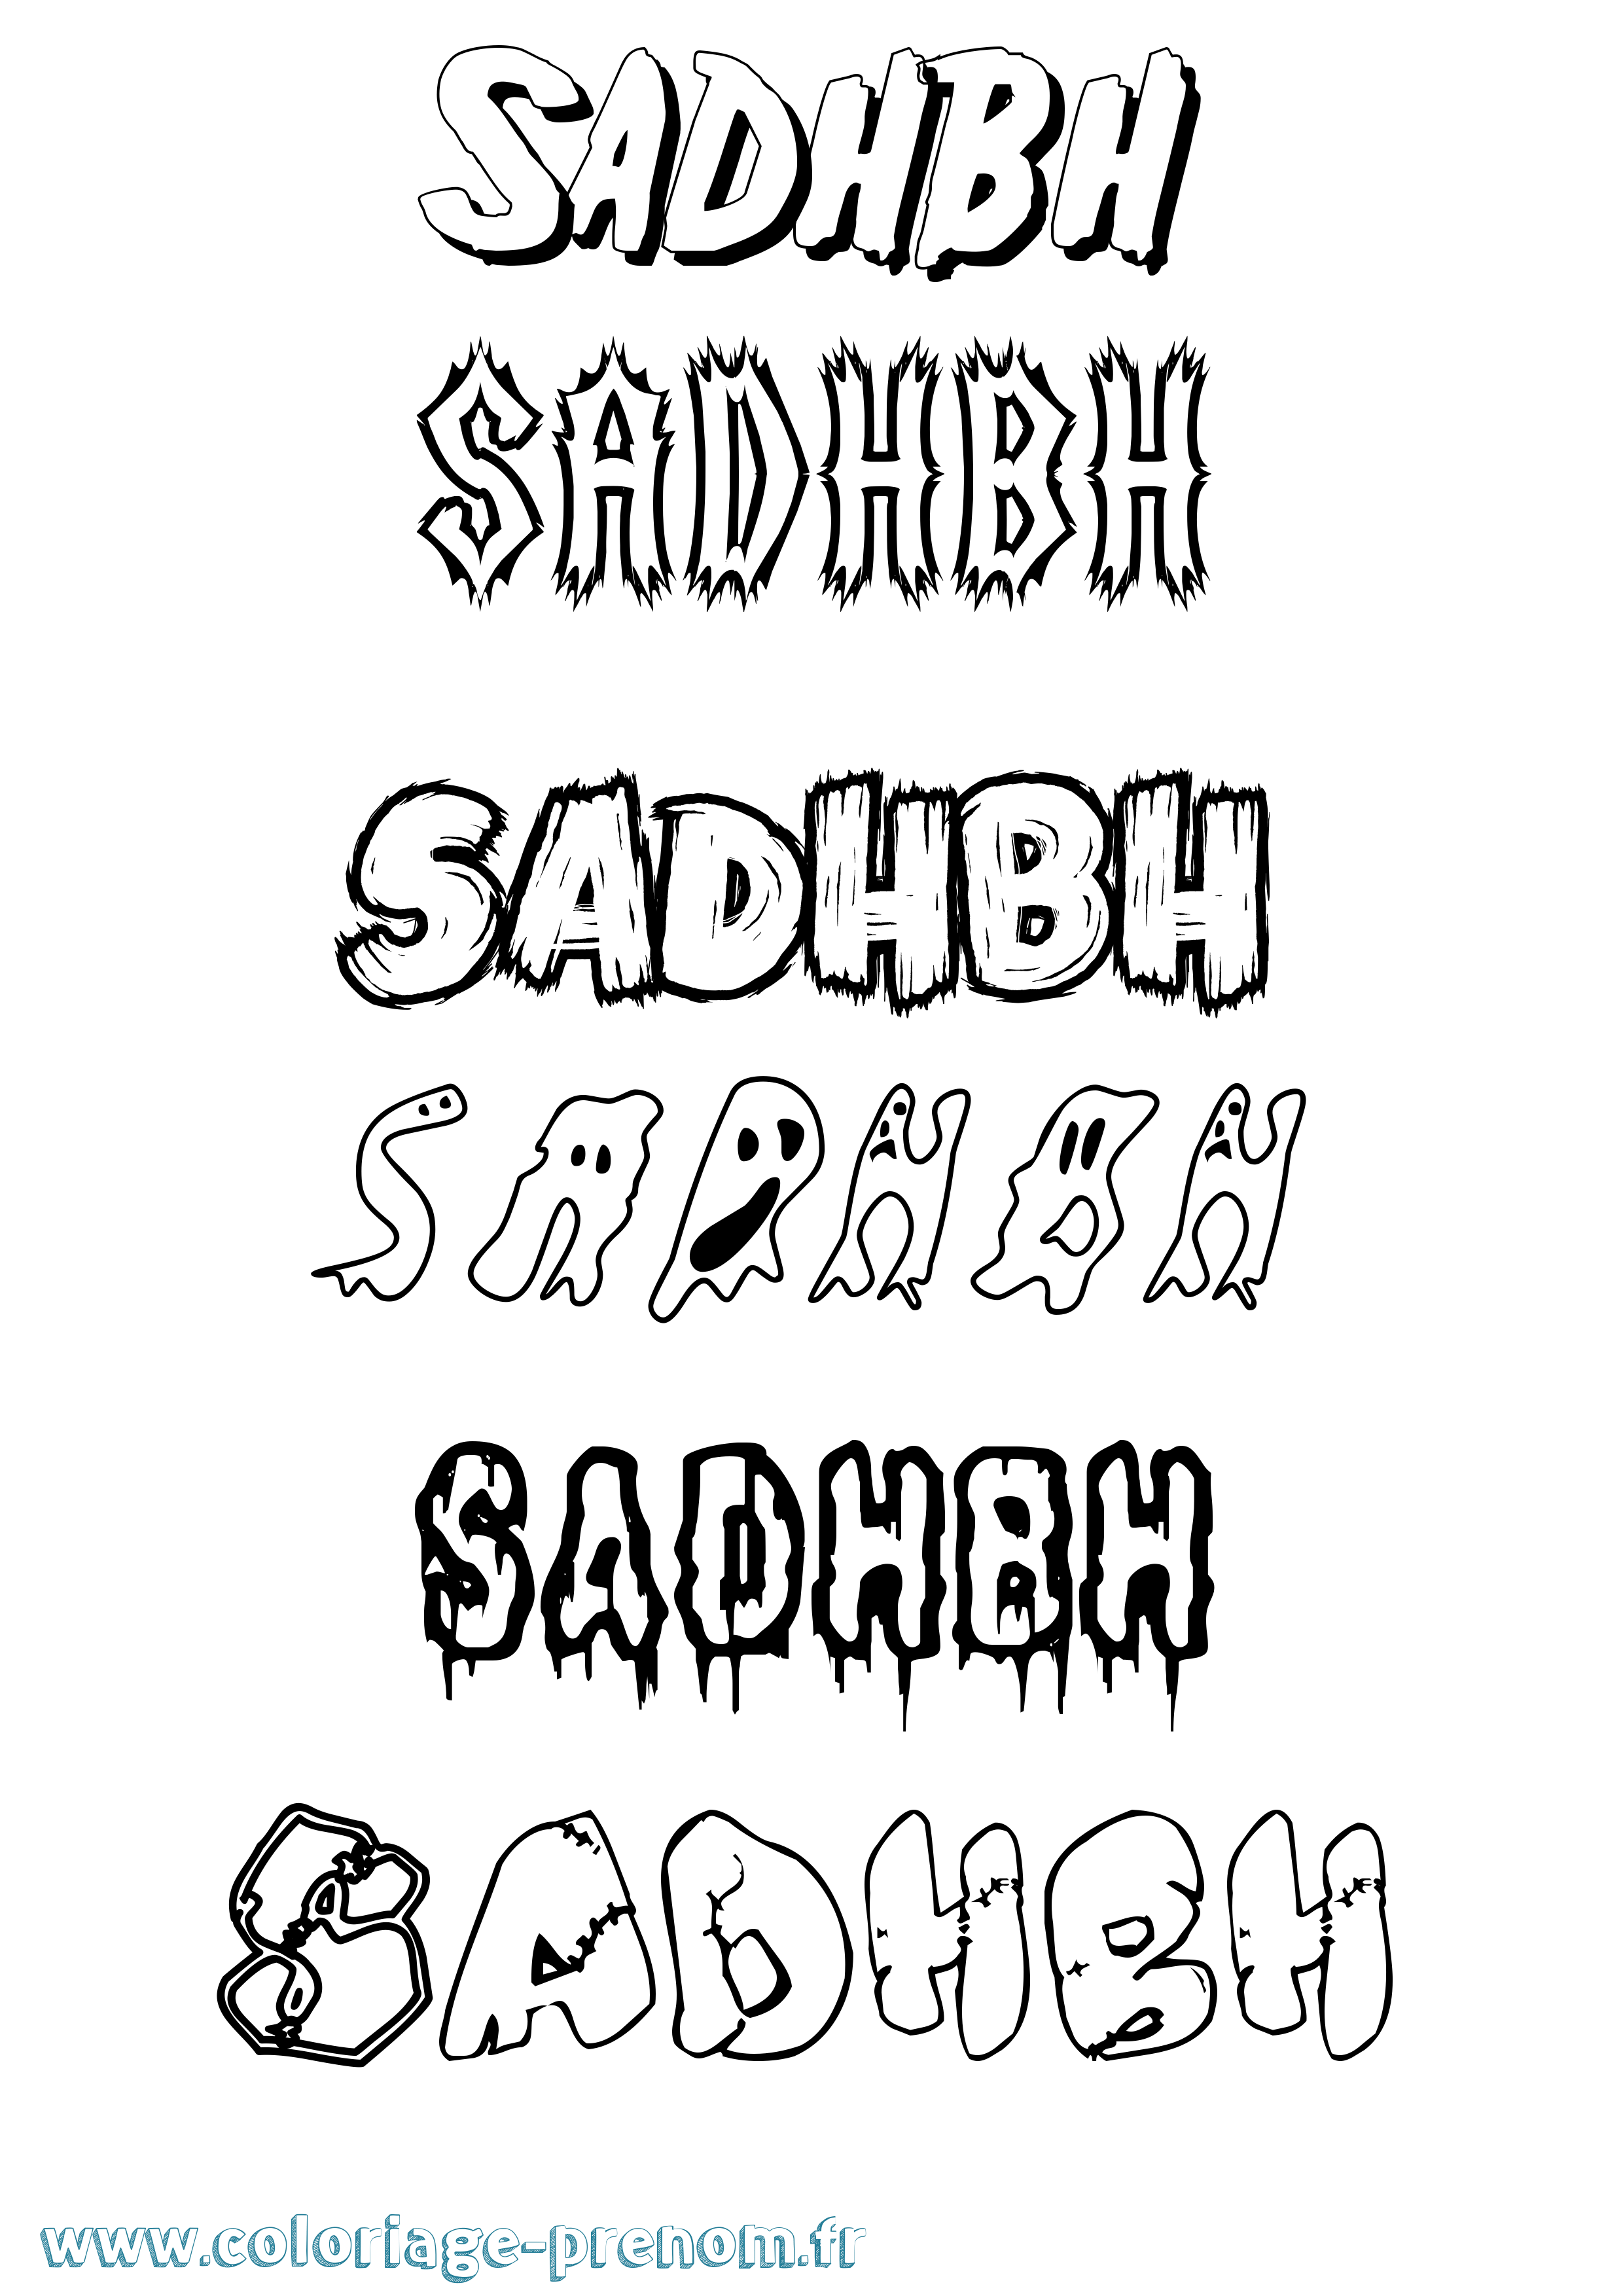 Coloriage prénom Sadhbh Frisson